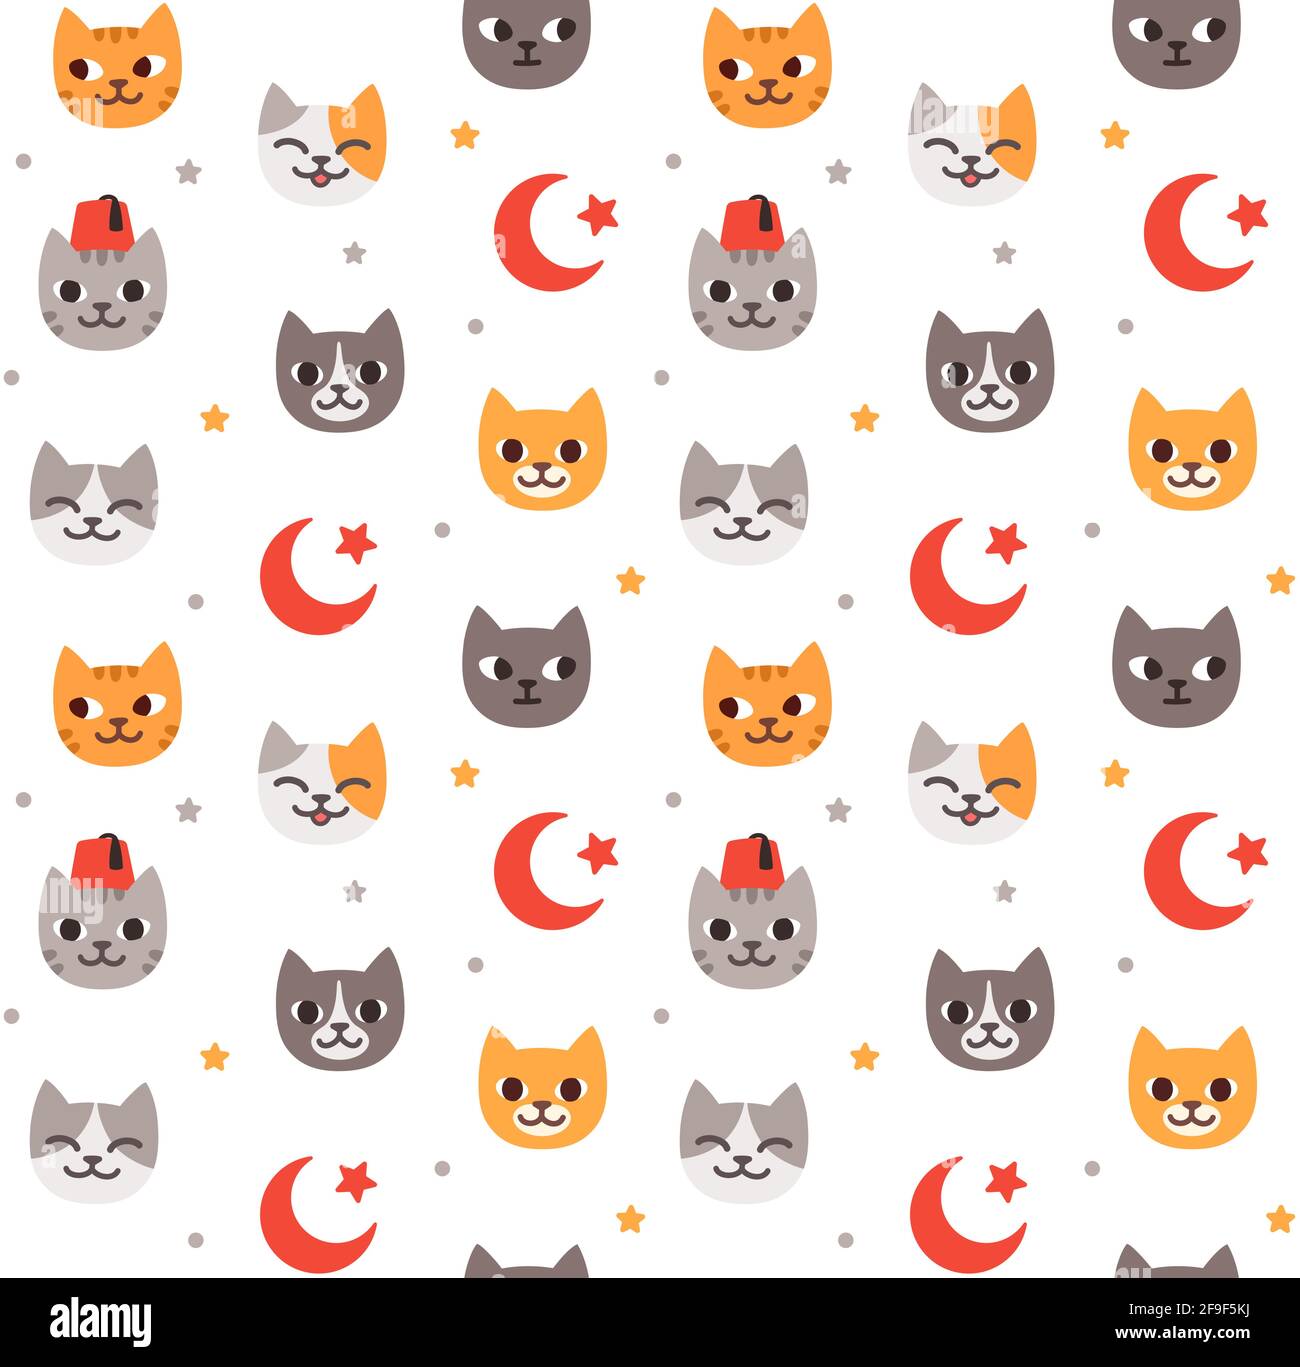 Nahtloses Muster aus türkischen Straßenkatzen und Türkei-Flaggen-Symbolen. Cute Cartoon Hintergrund, Vektor-Illustration. Stock Vektor